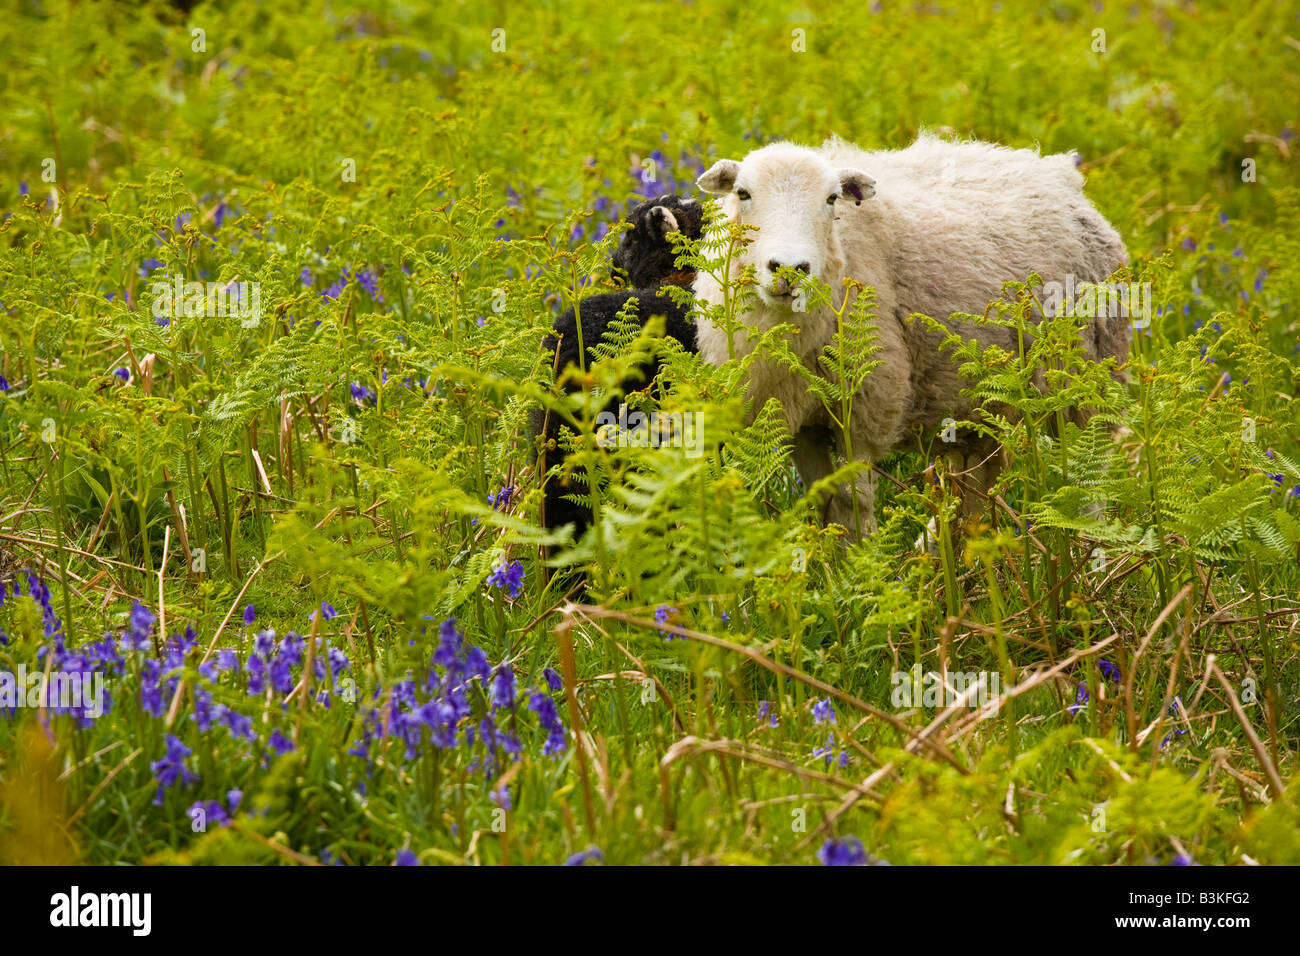 Angleterre Cumbria Lake District National Park Les moutons et un agneau noir caché dans une couverture de bluebells sur une tombe près de Dunnerdale. Banque D'Images